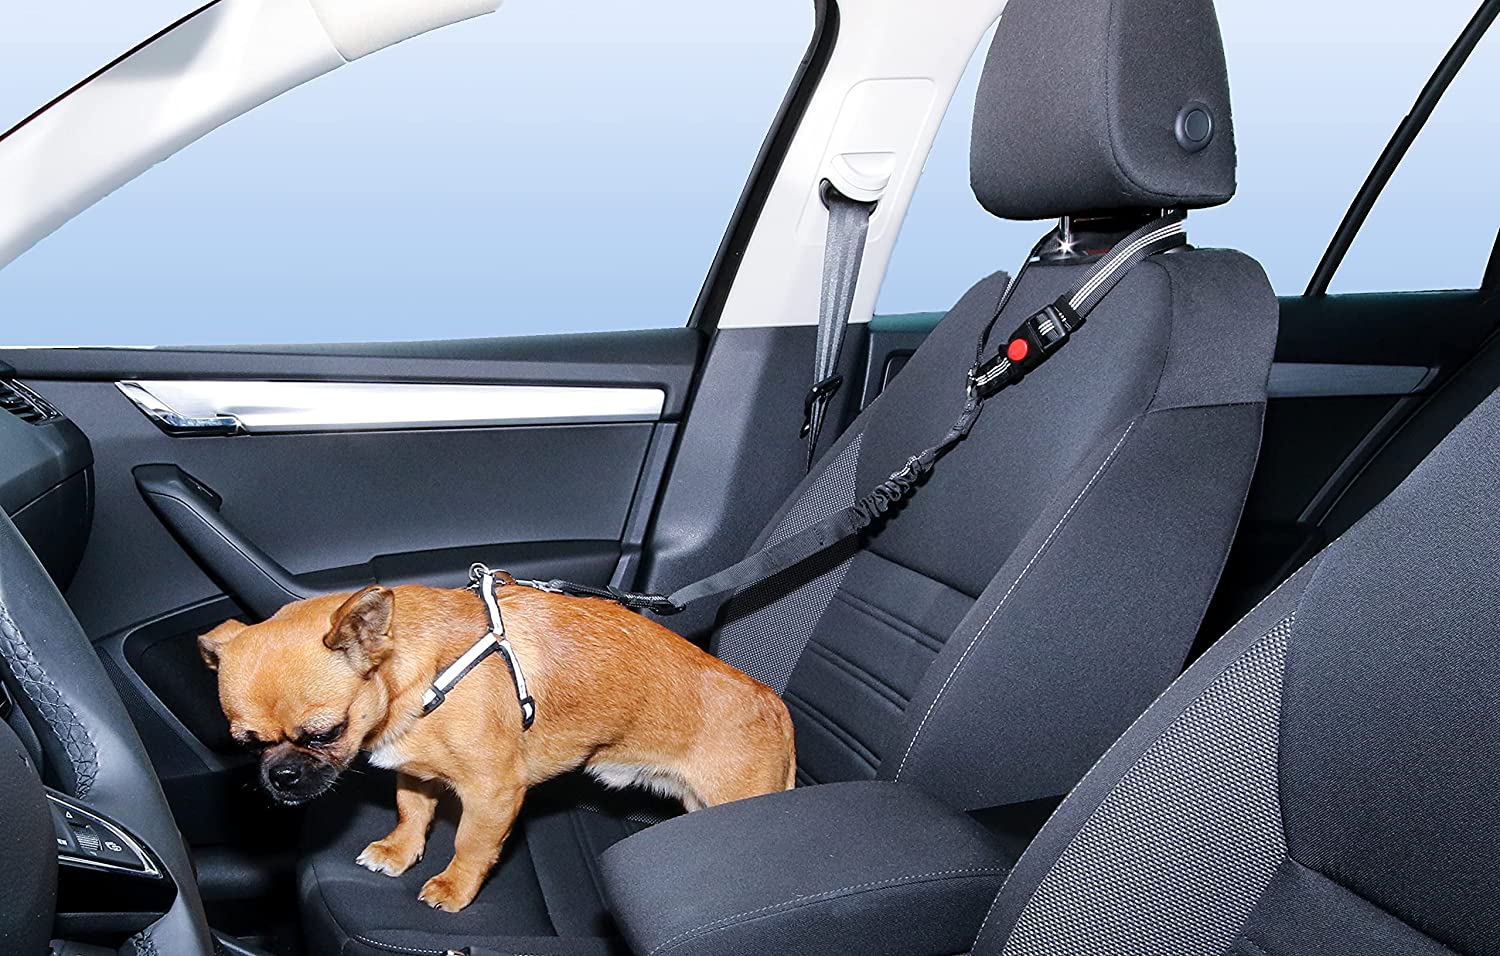 دستک قابل تنظیم و تسمه های نایلونی بدون گره خوردن به راحتی به پشتی سر خودرو متصل می شوند. بند ایمنی به راحتی جدا می شود و آن را بند سگ مناسبی برای صندلی عقب خودروی شما می کند.